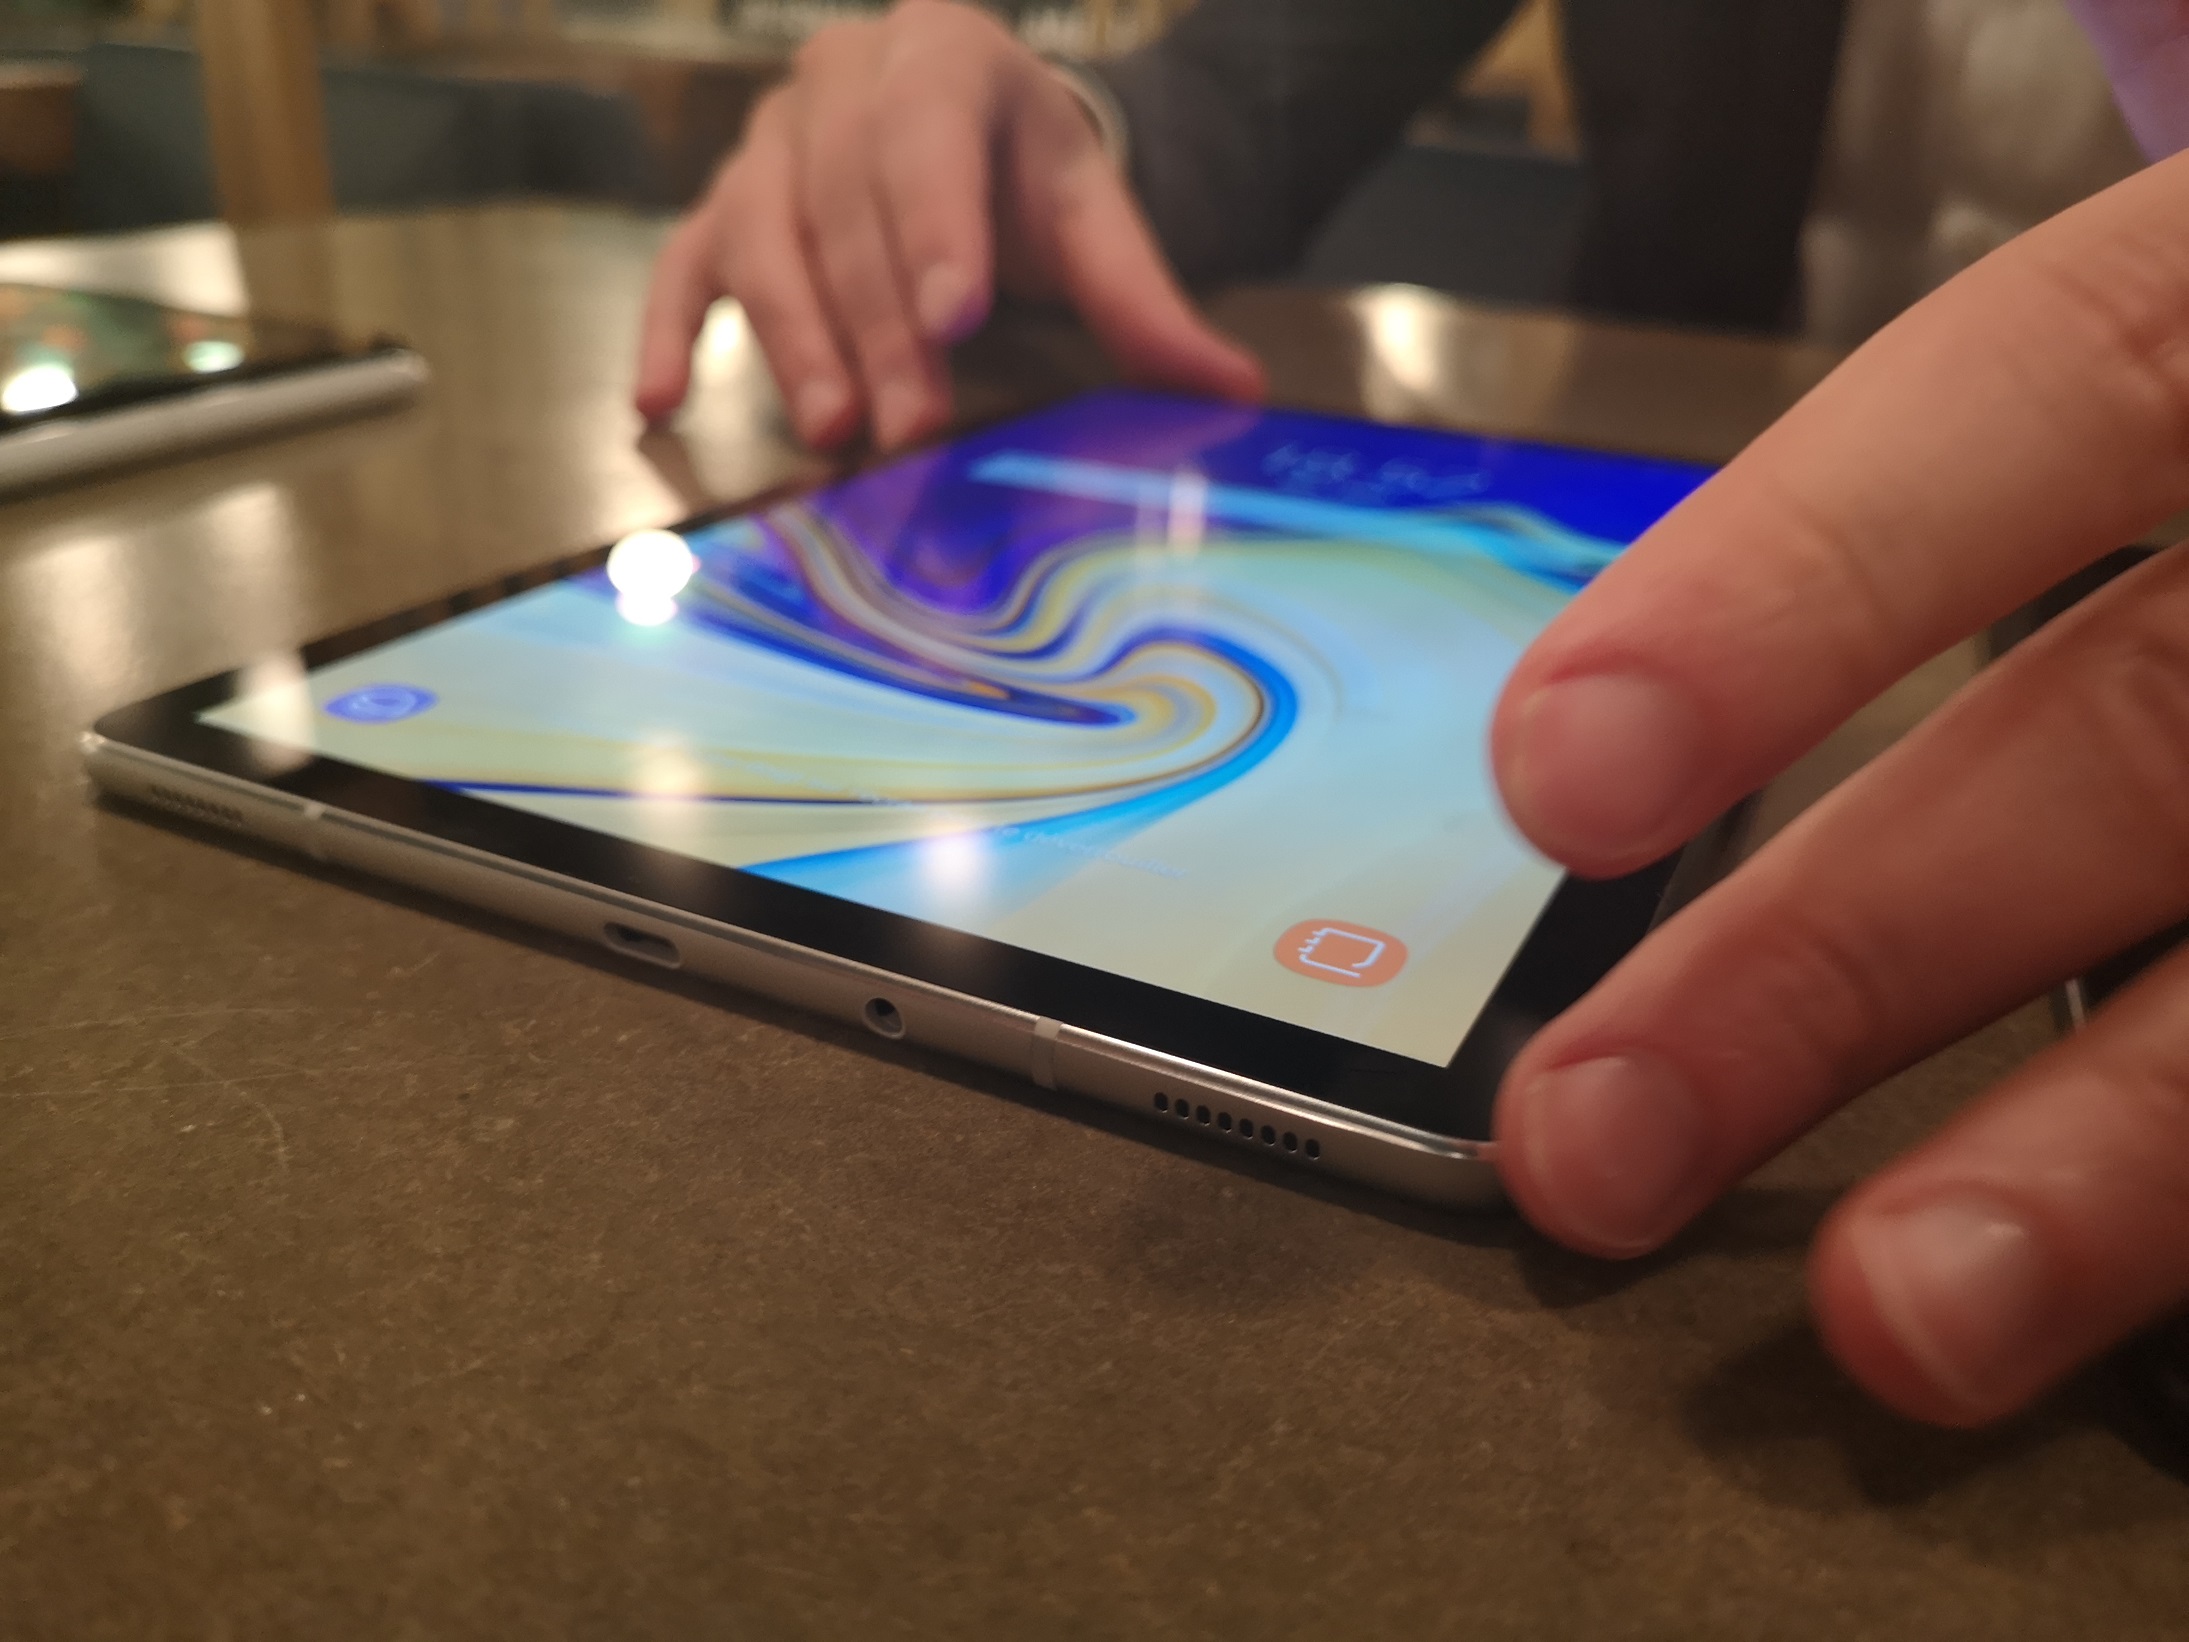 [ Prise en main ] Samsung Galaxy Tab S4 : une nouvelle génération bien pensée